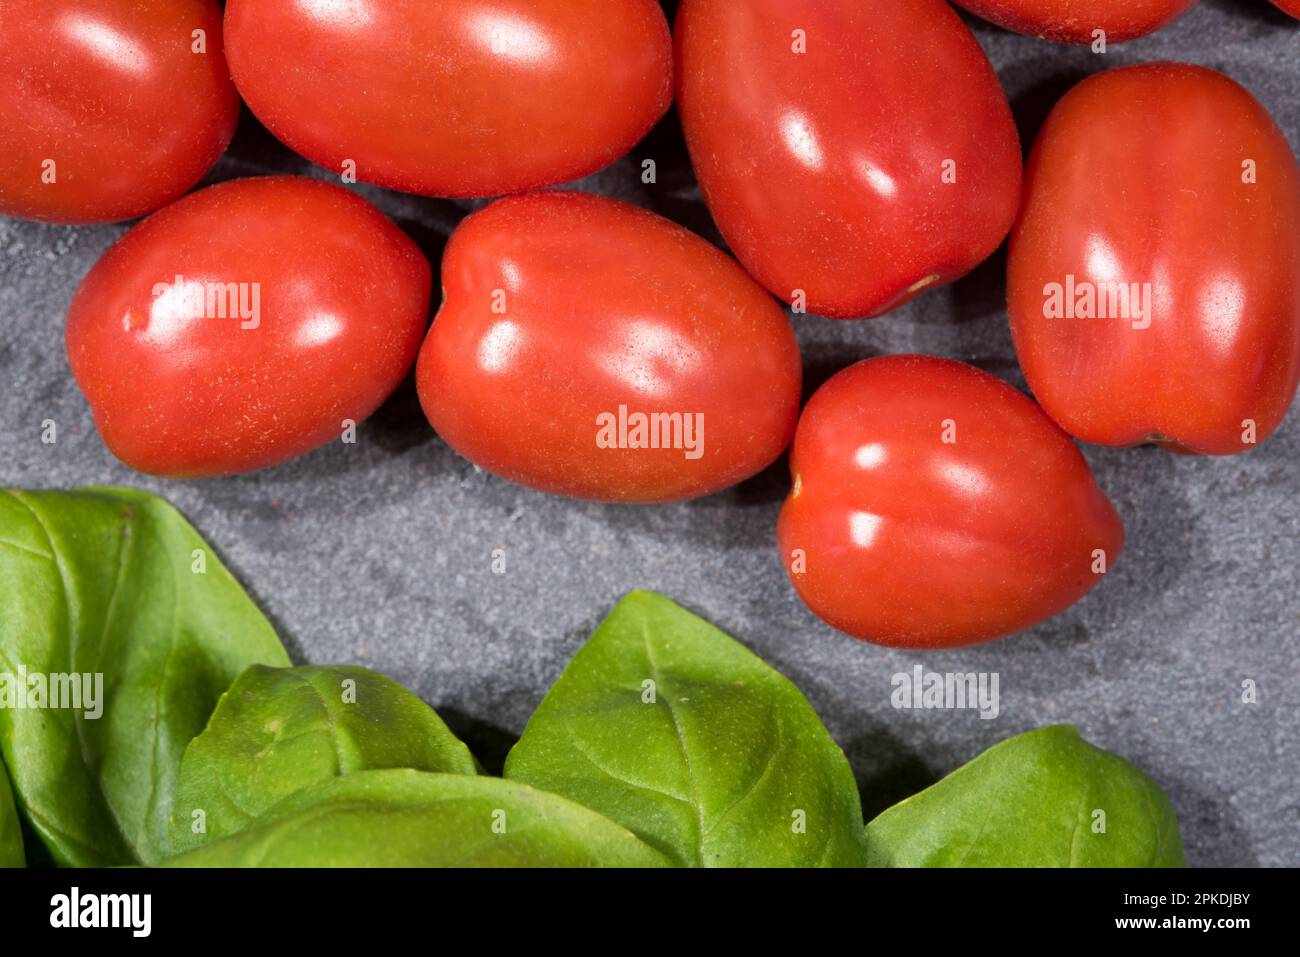 alcuni bei pomodori con foglie di basilico Stock Photo